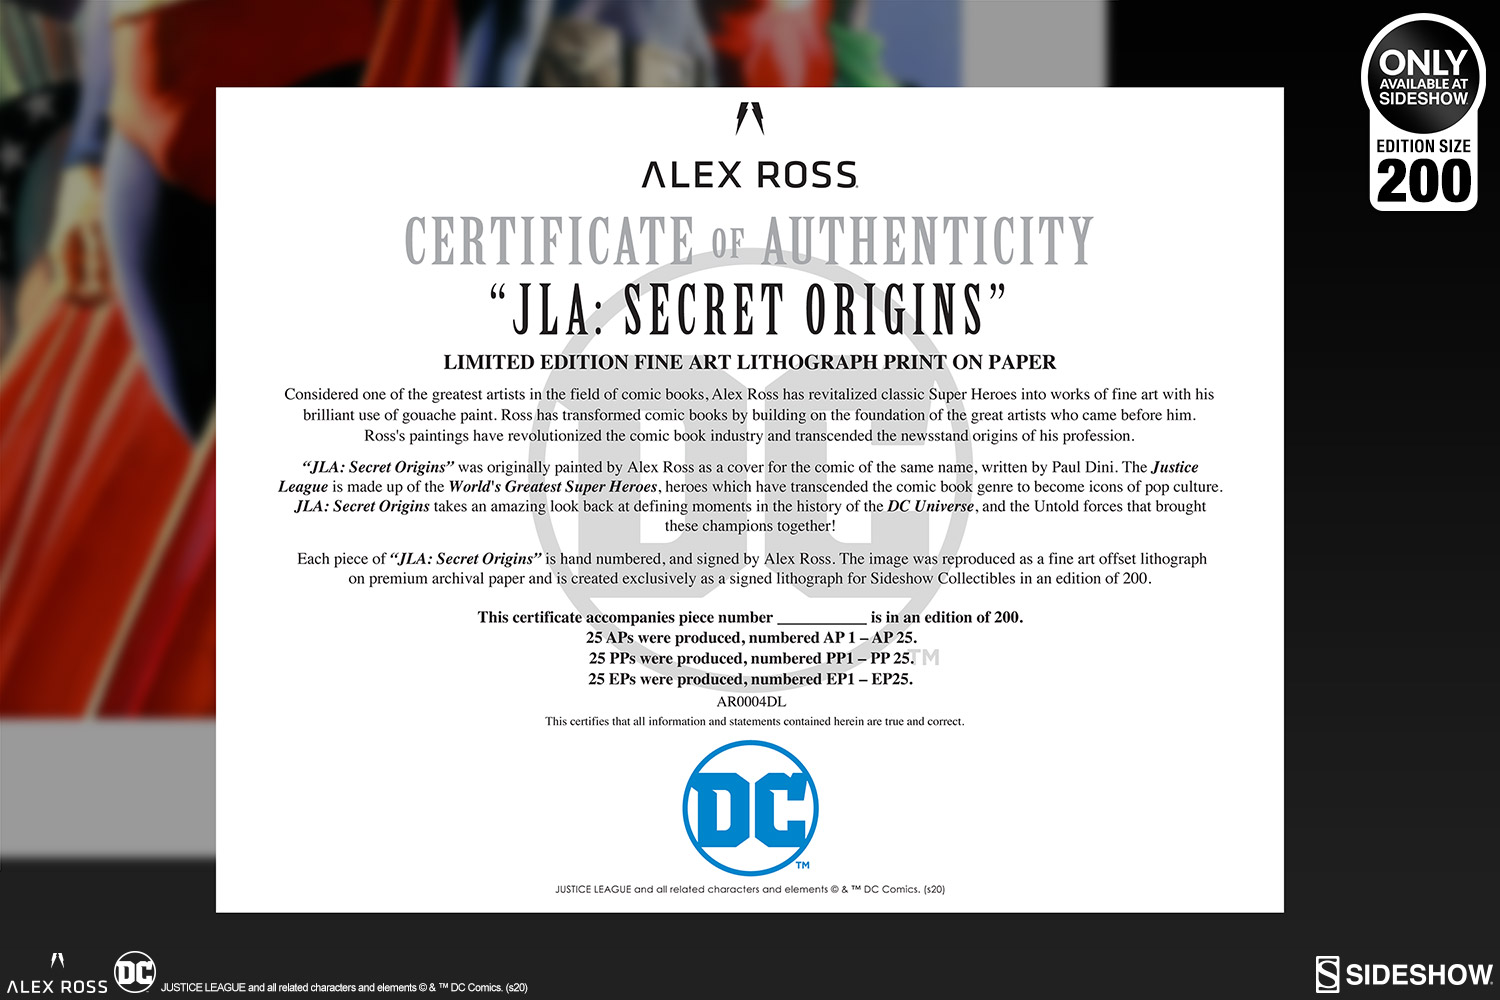 jla-secret-origins_dc-comics_gallery_5ea244059072d.jpg